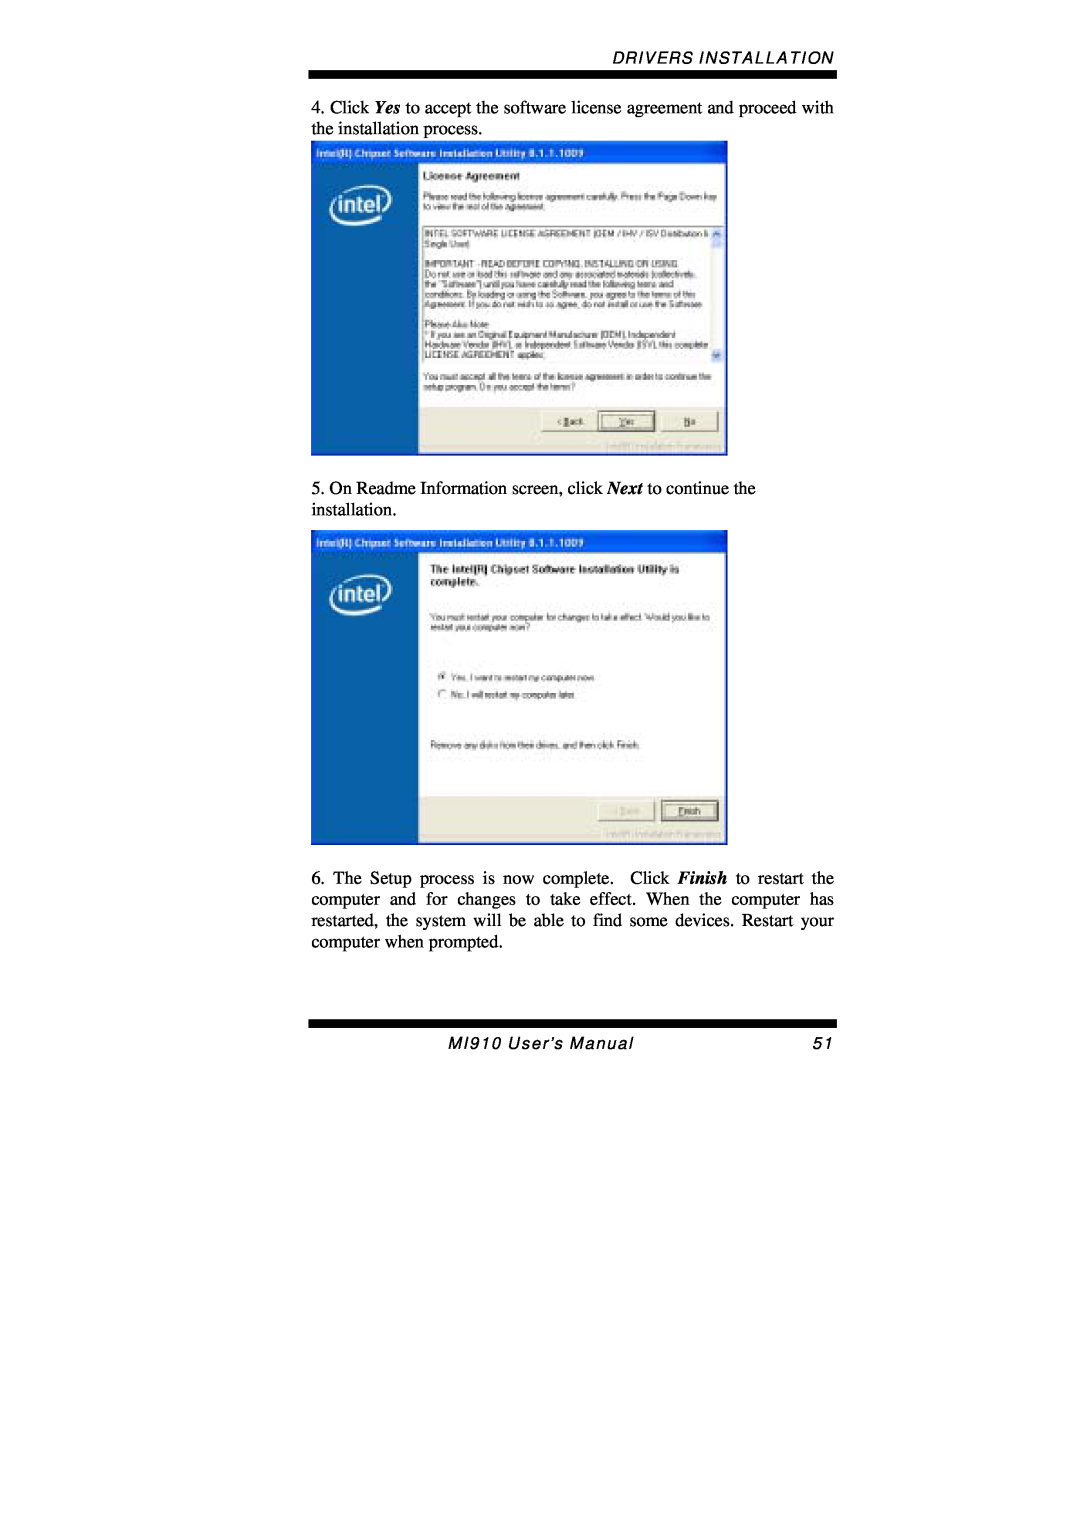 Intel MI910F user manual Drivers Installation, MI910 User’s Manual 